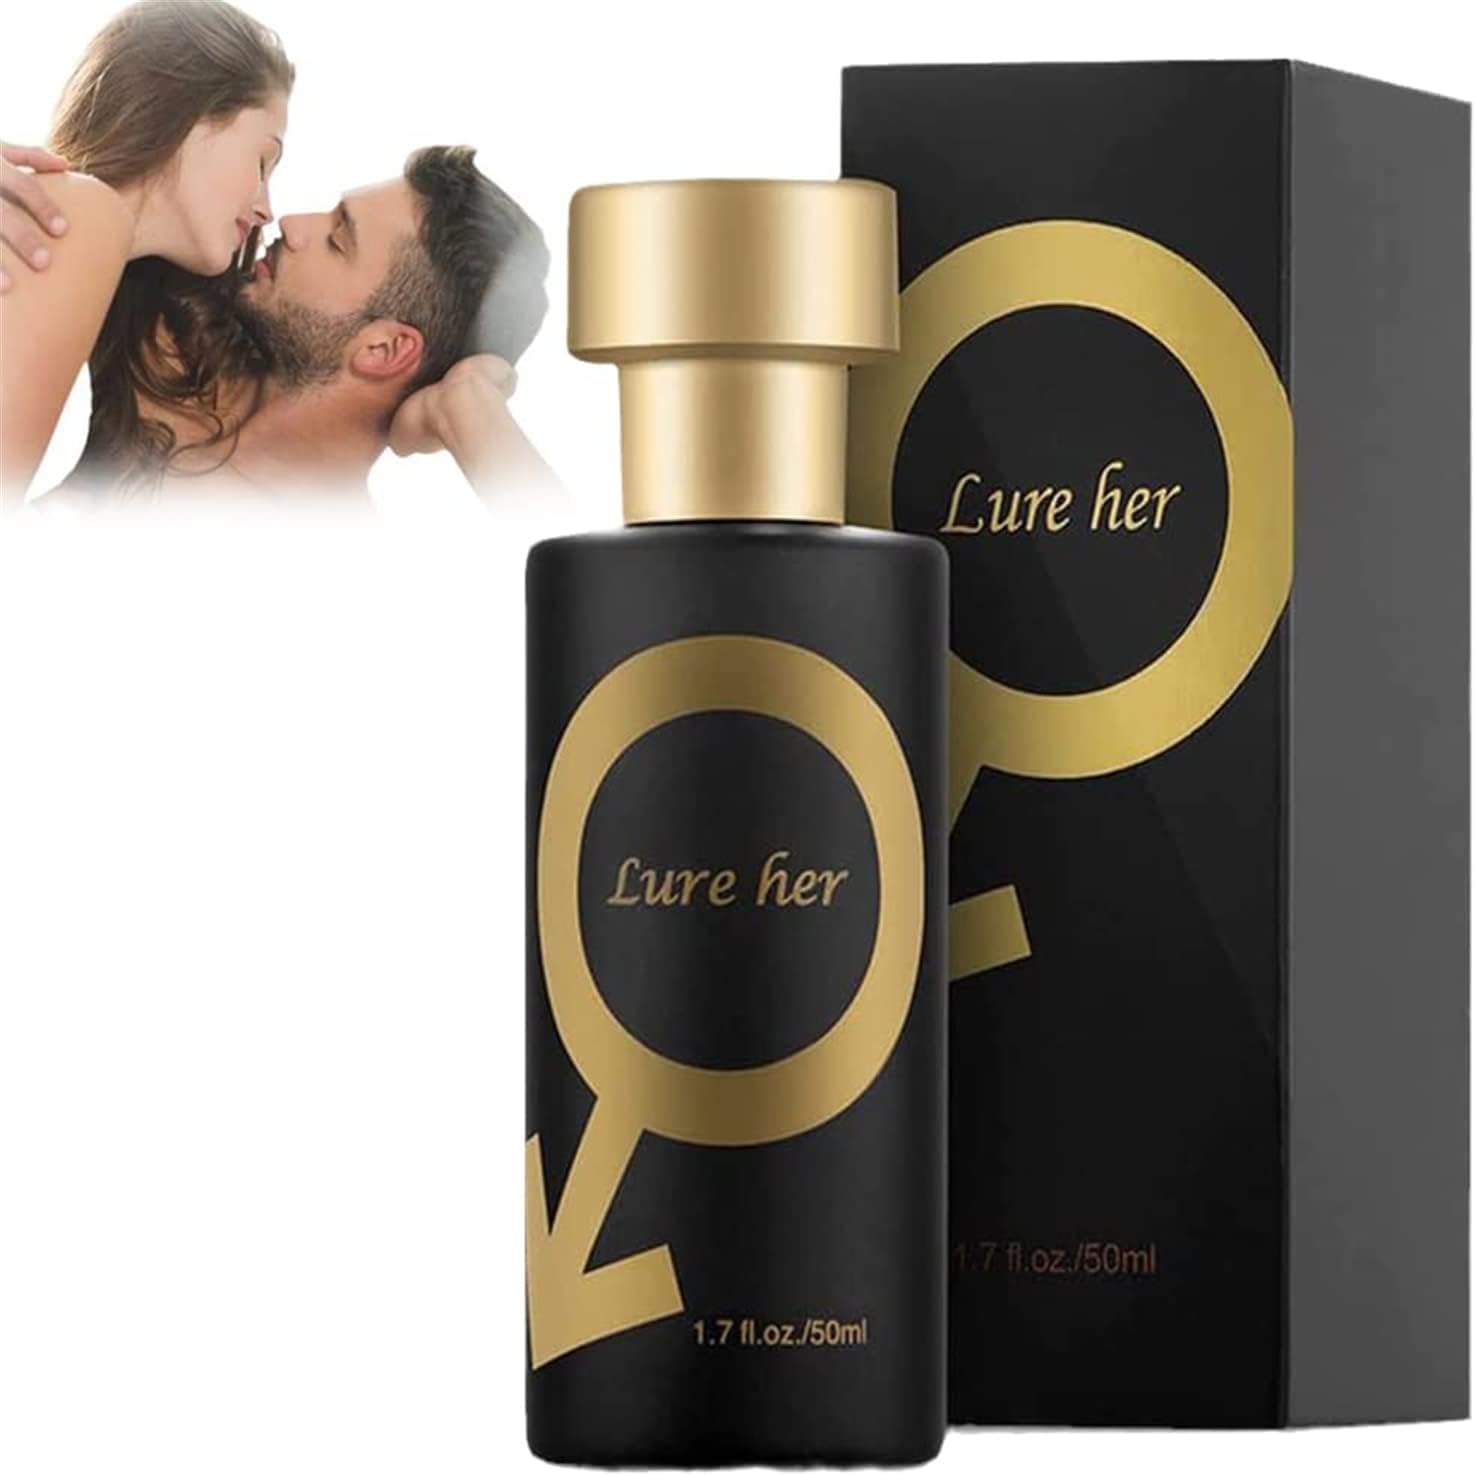 Golden Lure Pheromone Perfume